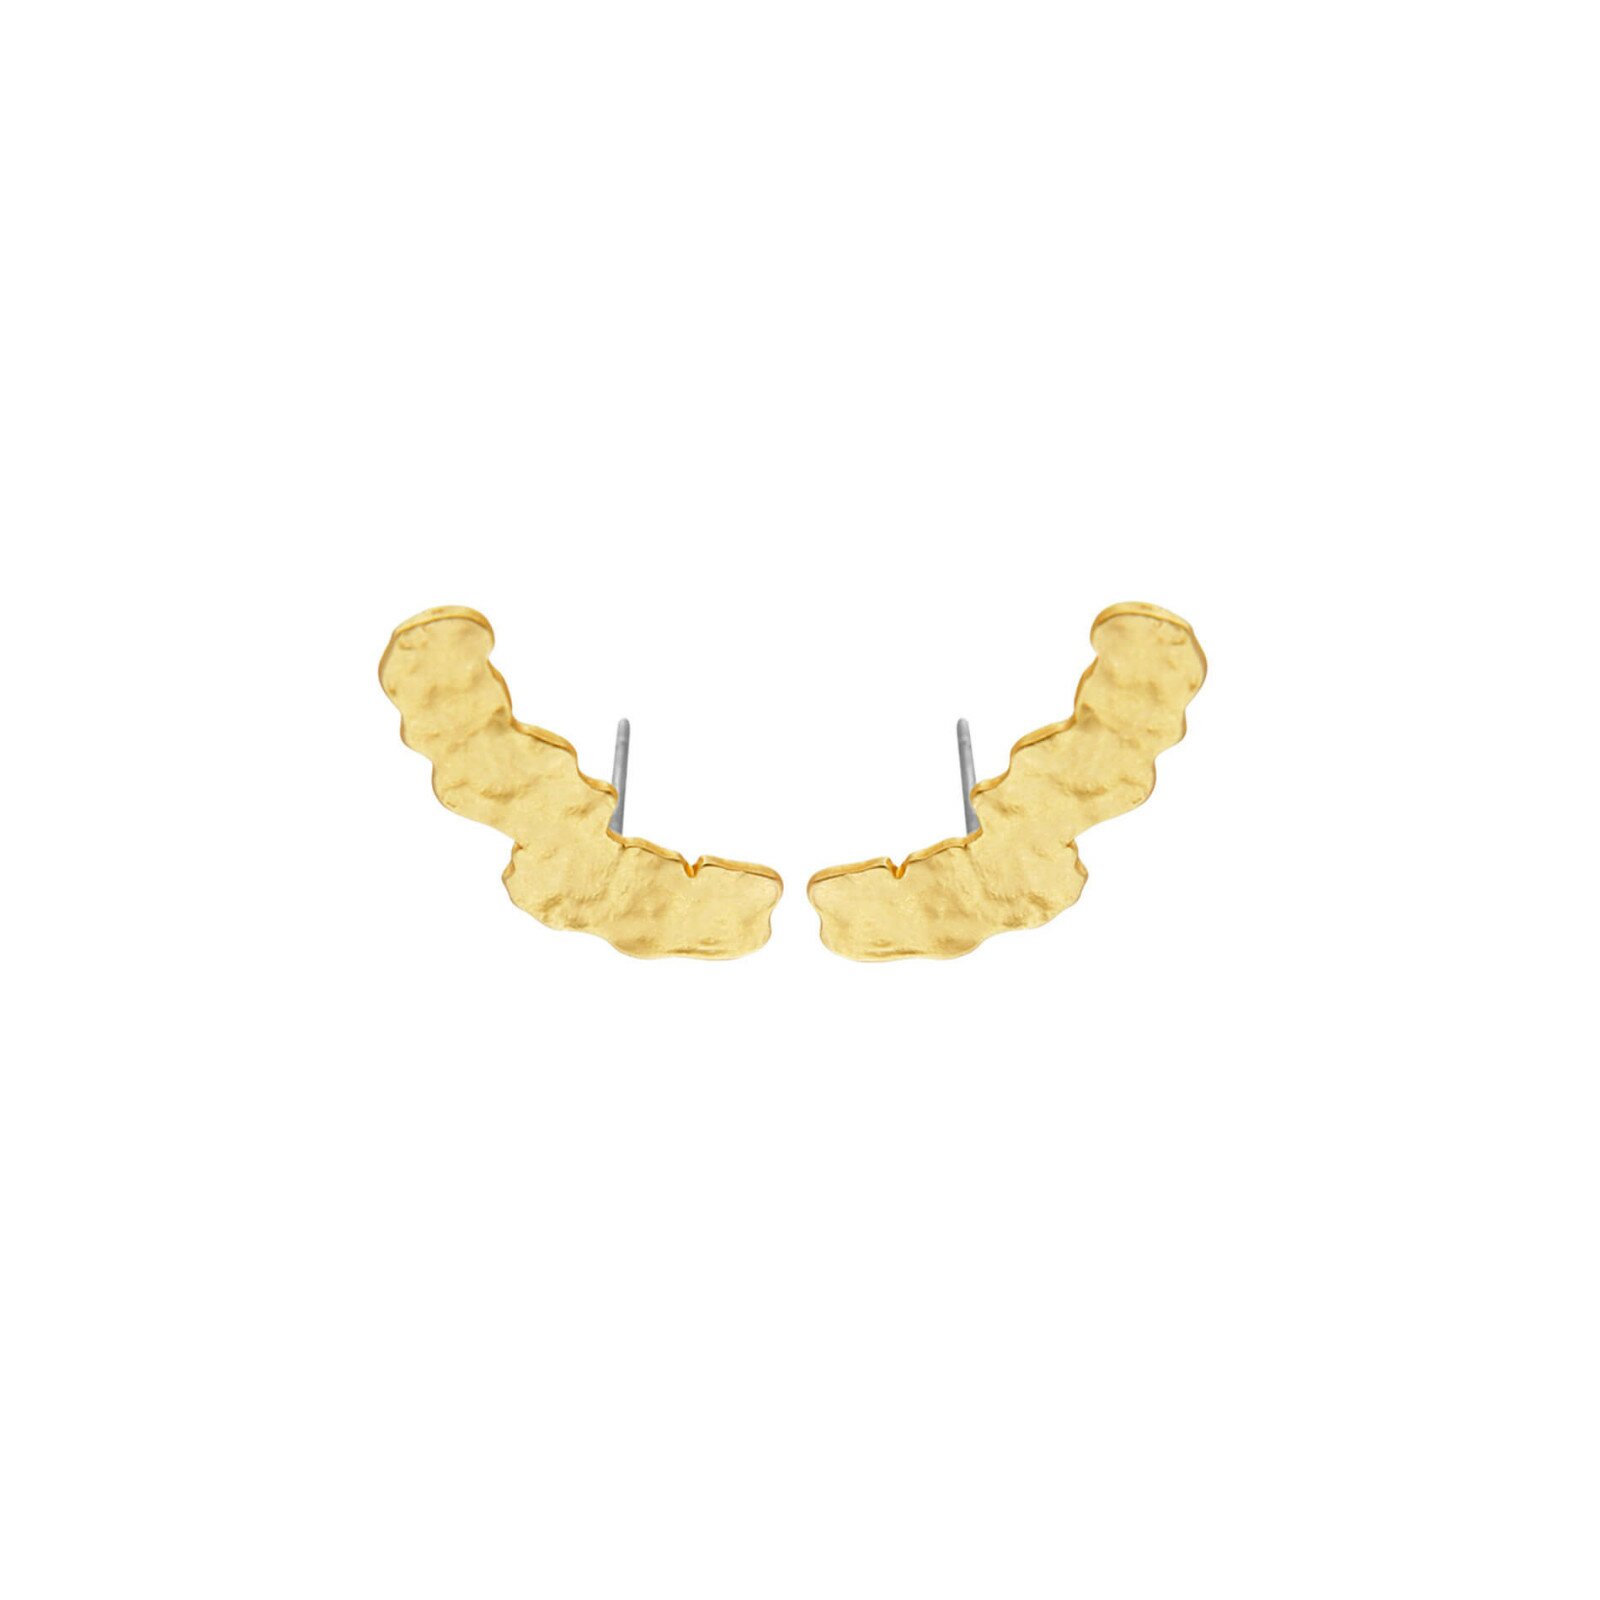 Dansk Smykkekunst Amelia Crawler Earrings - Gold Plating 